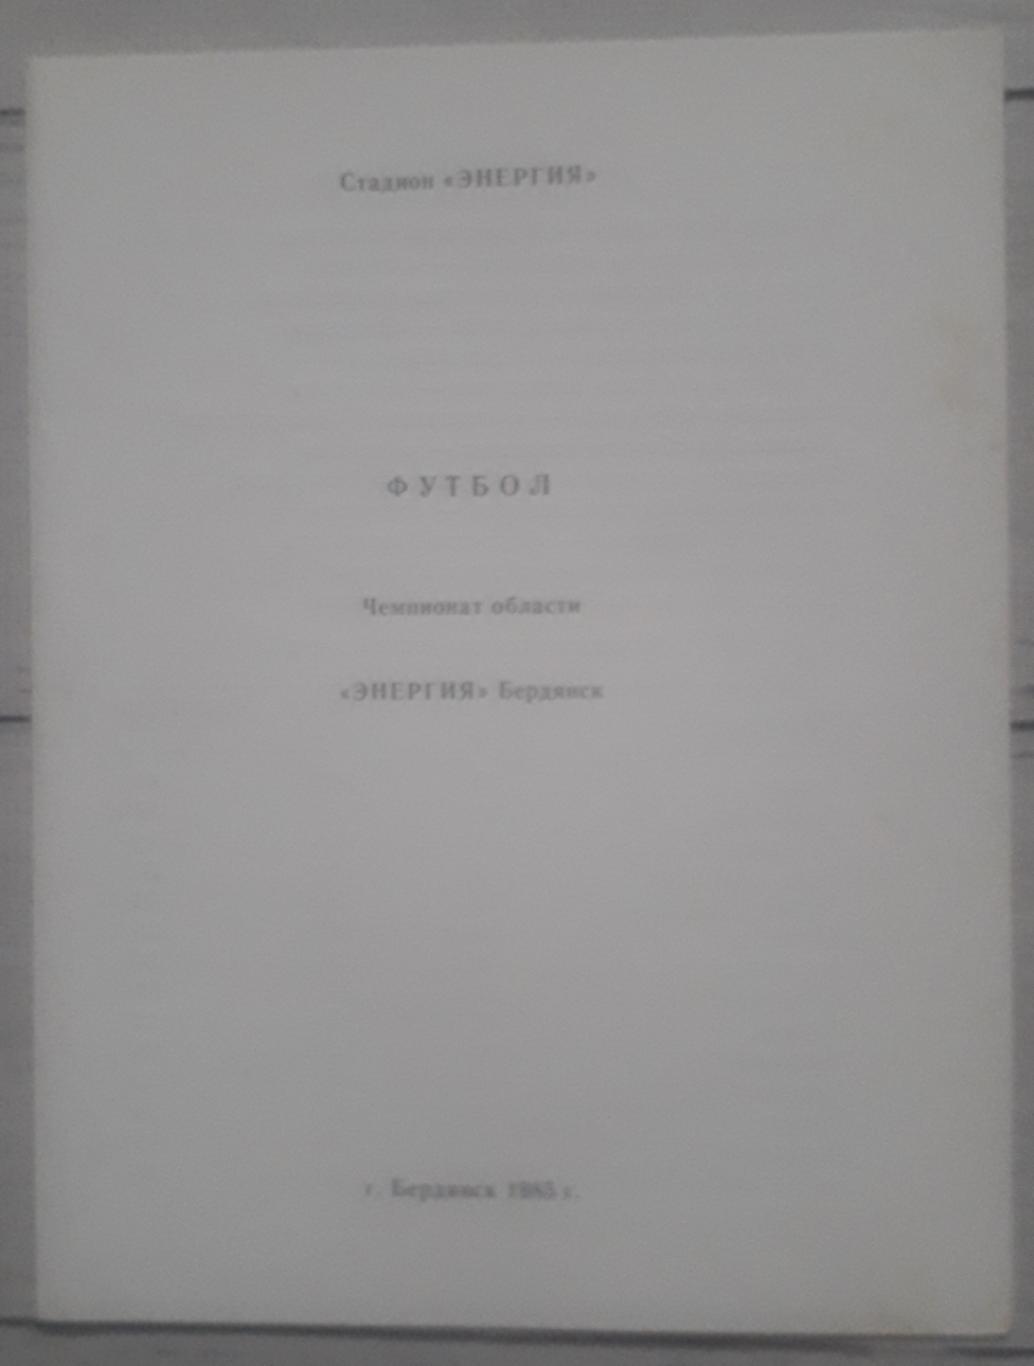 Программа сезона. Энергия Бердянск 1985